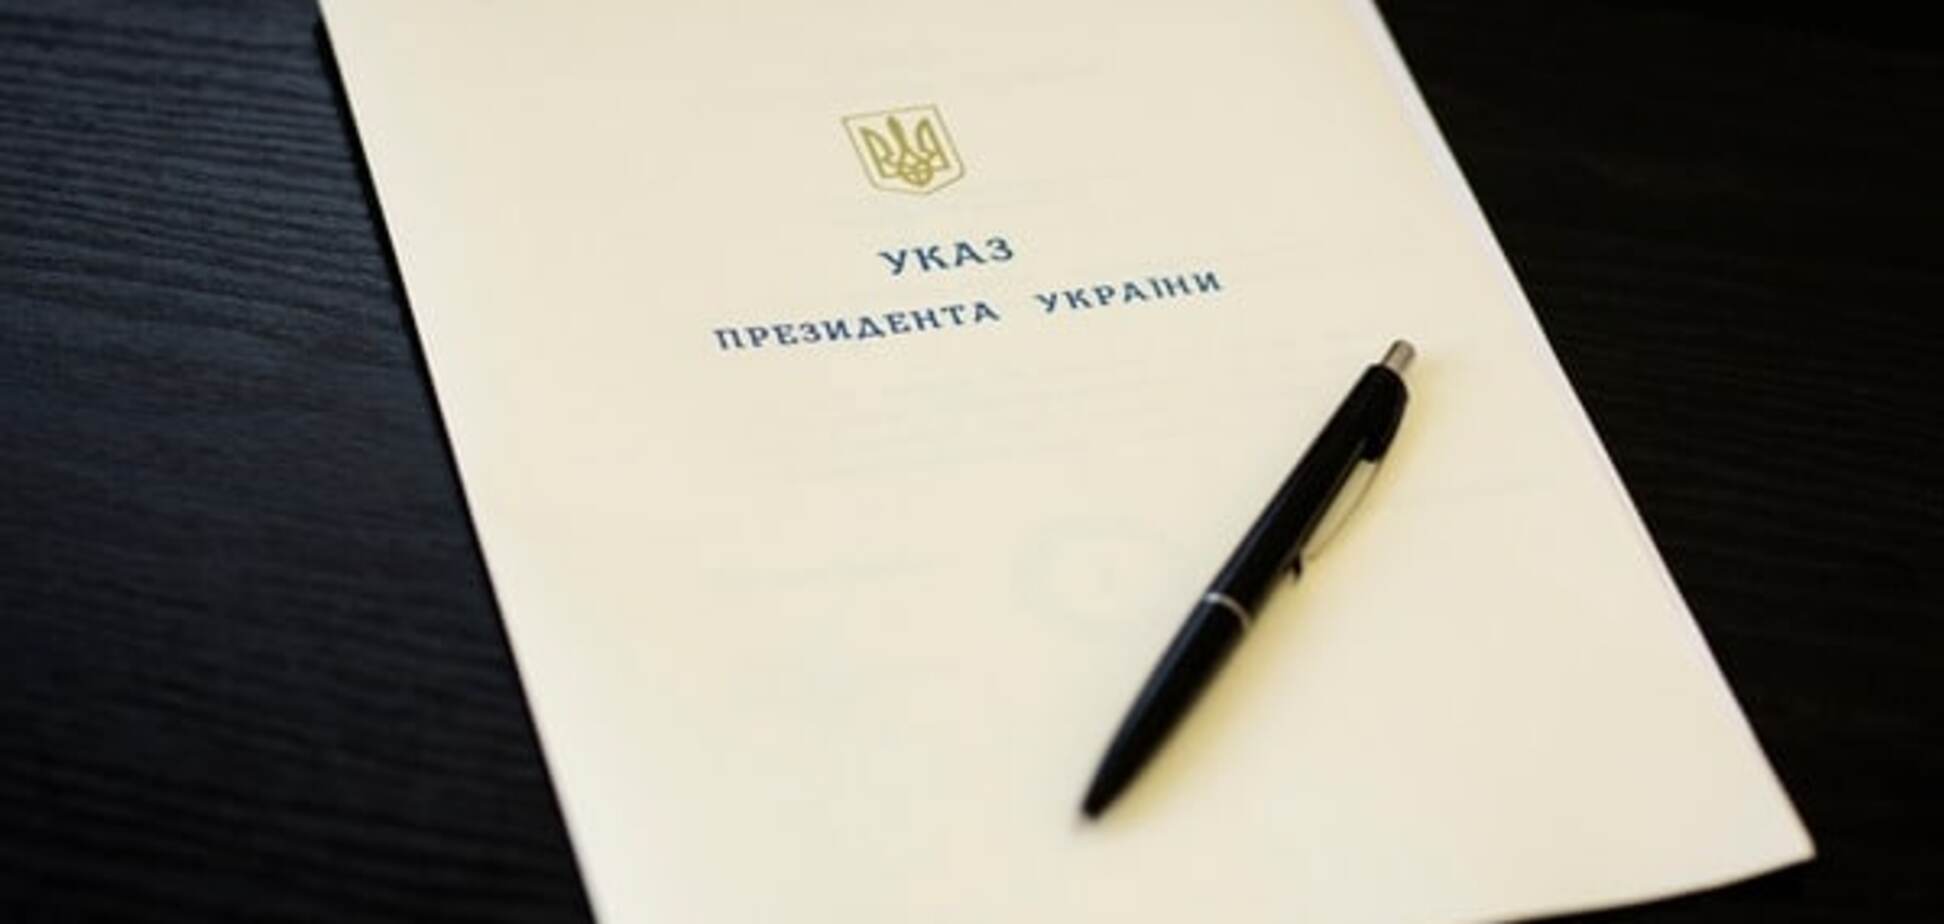 Порошенко подписал указ о гражданстве для иностранцев, воюющих за Украину